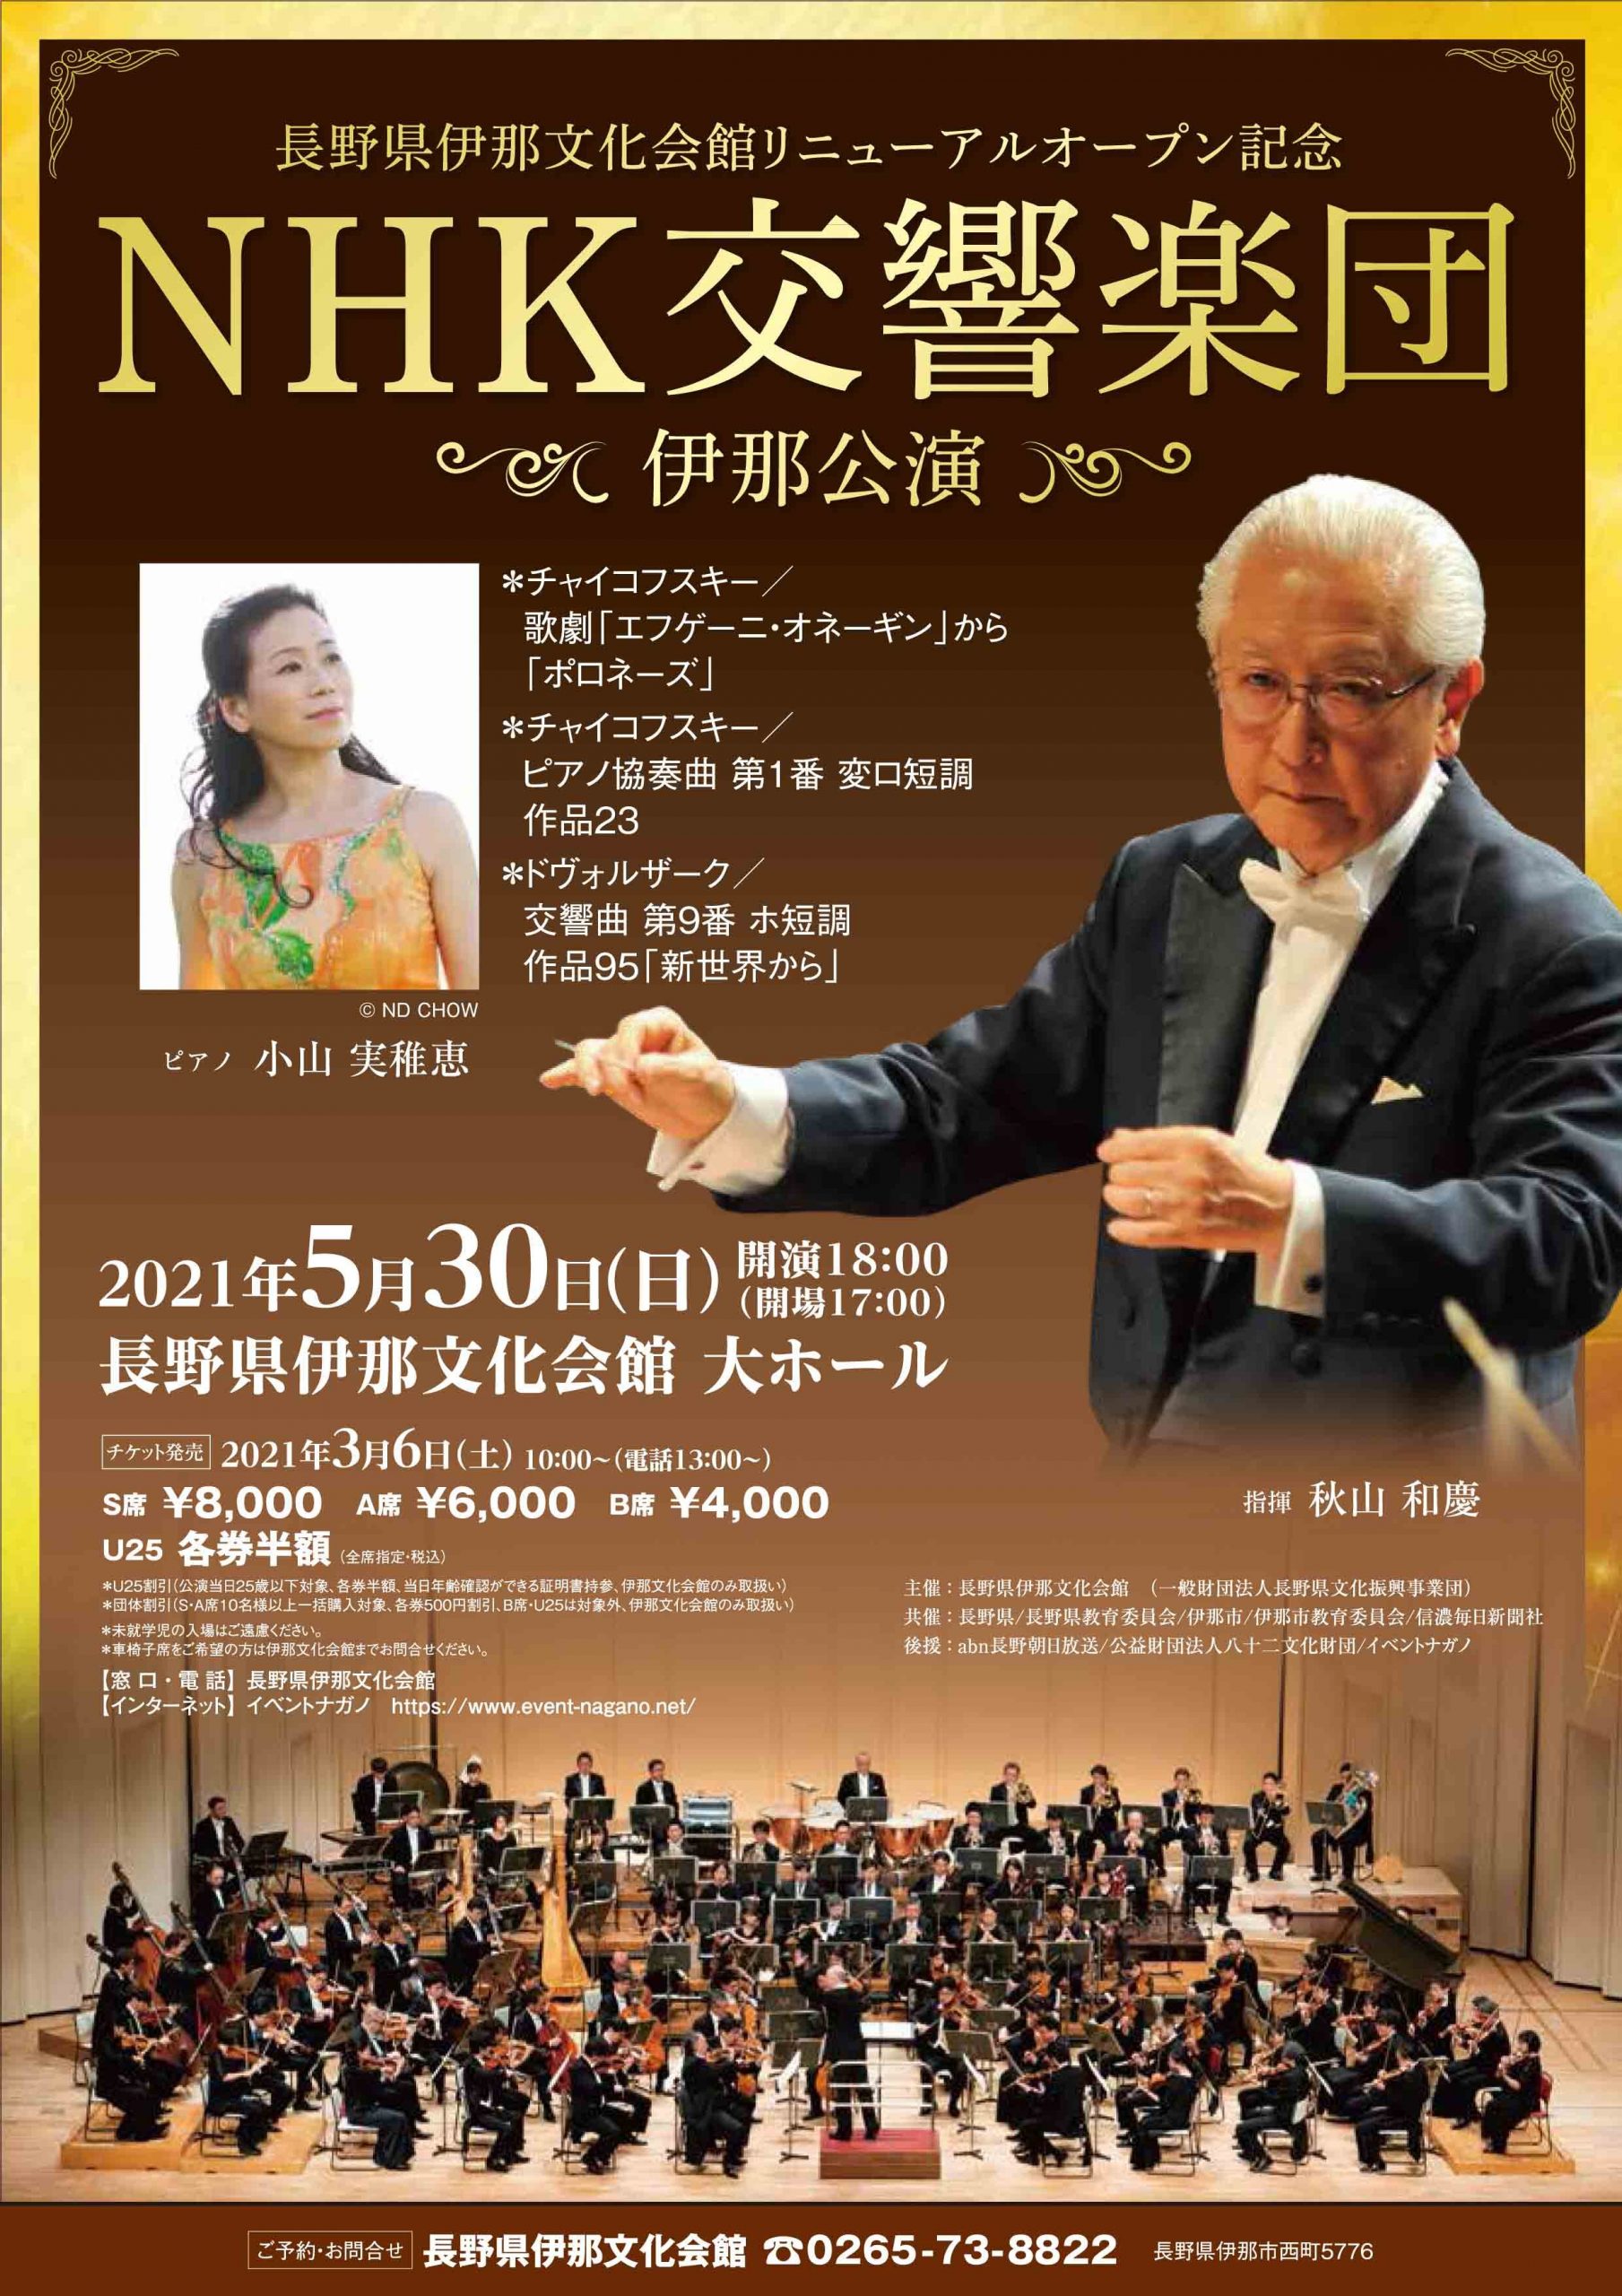 長野県伊那文化会館リニューアルオープン記念 NHK交響楽団 伊那公演